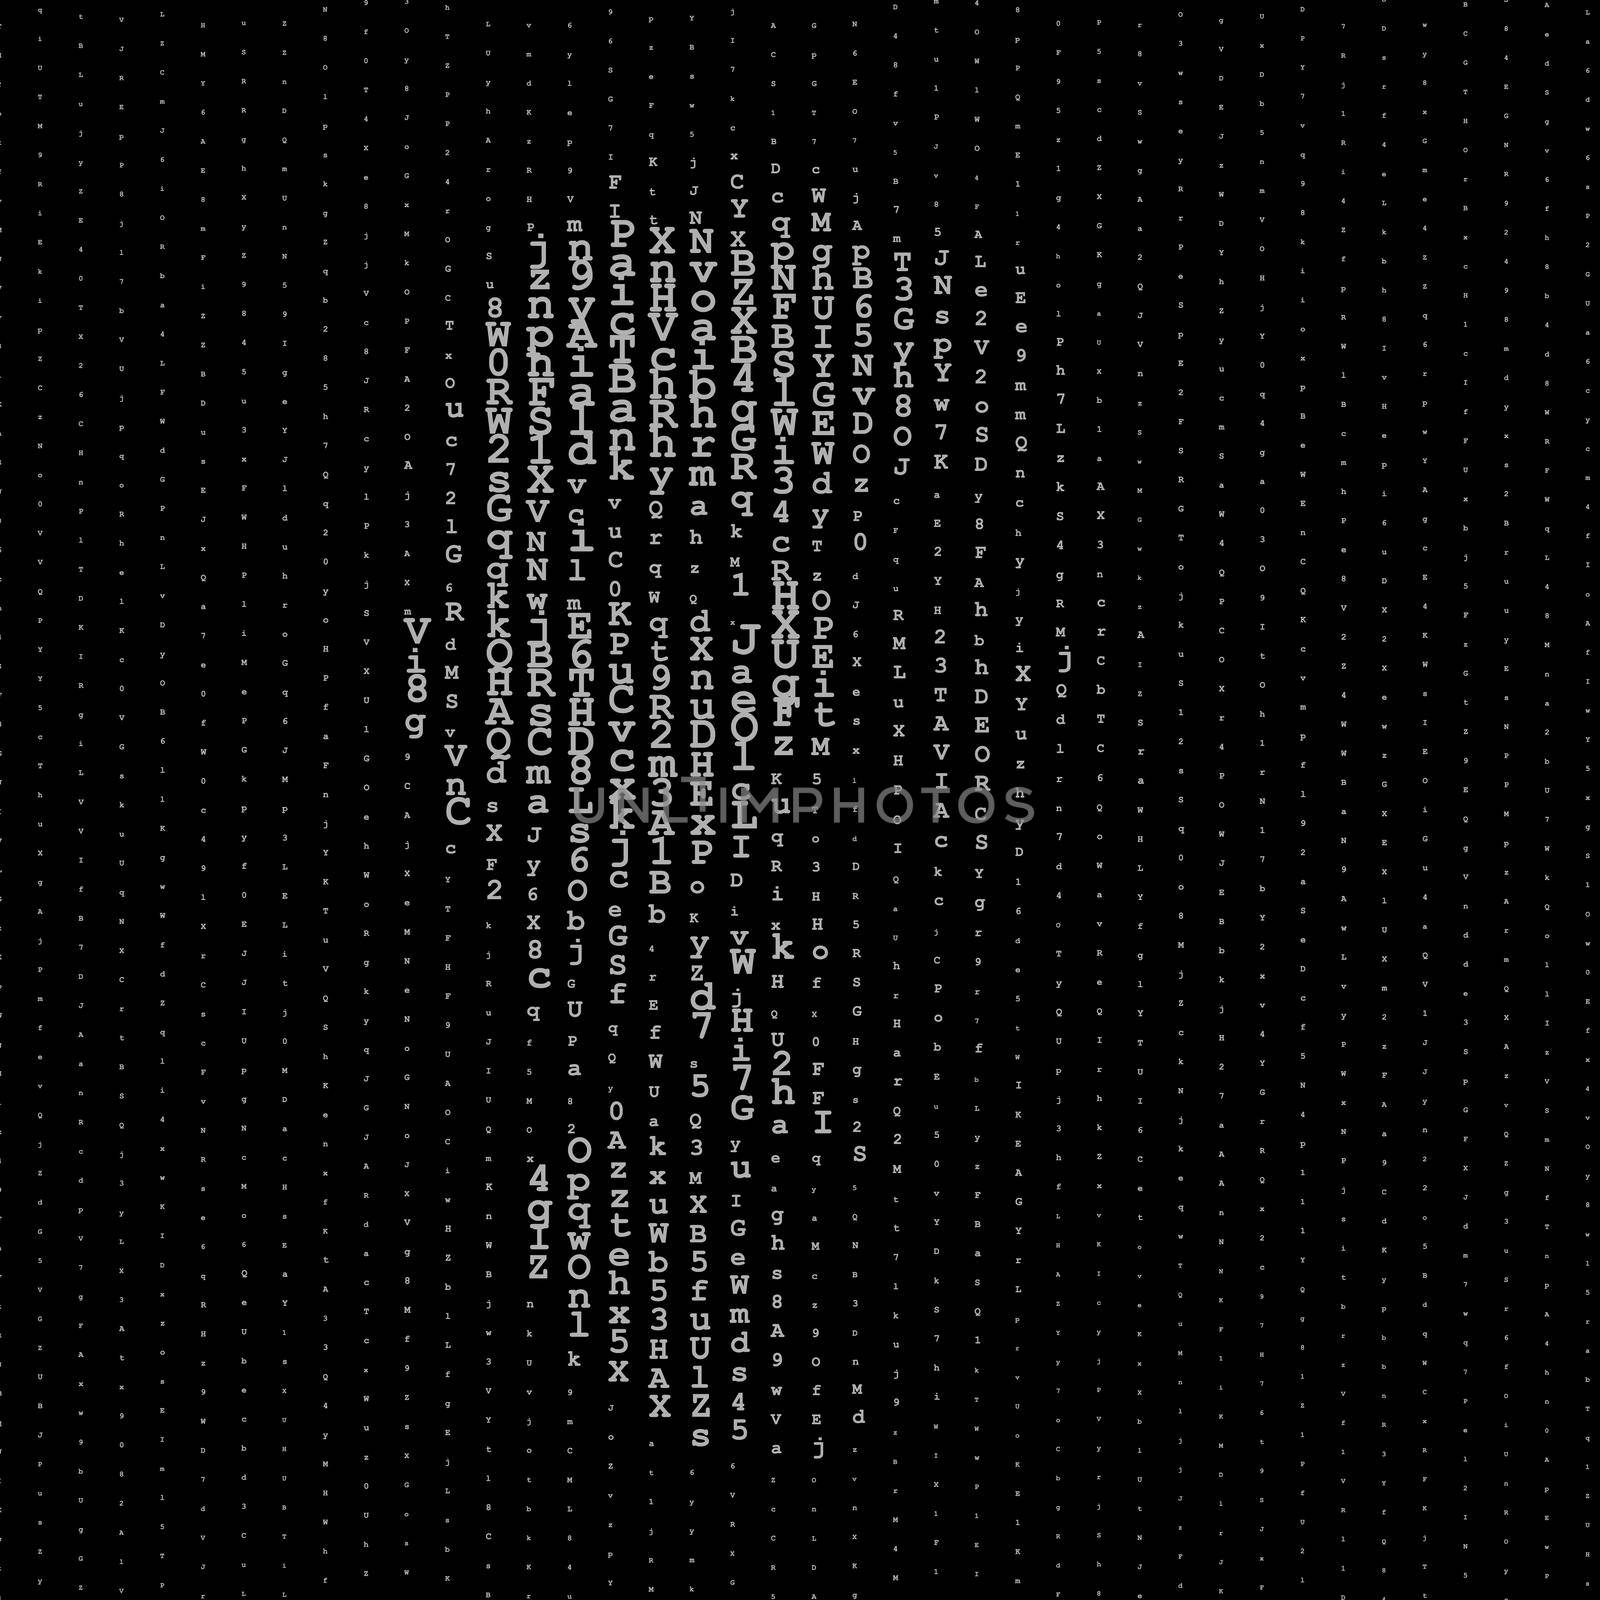 Man portrait, matrix concept illustration by dutourdumonde